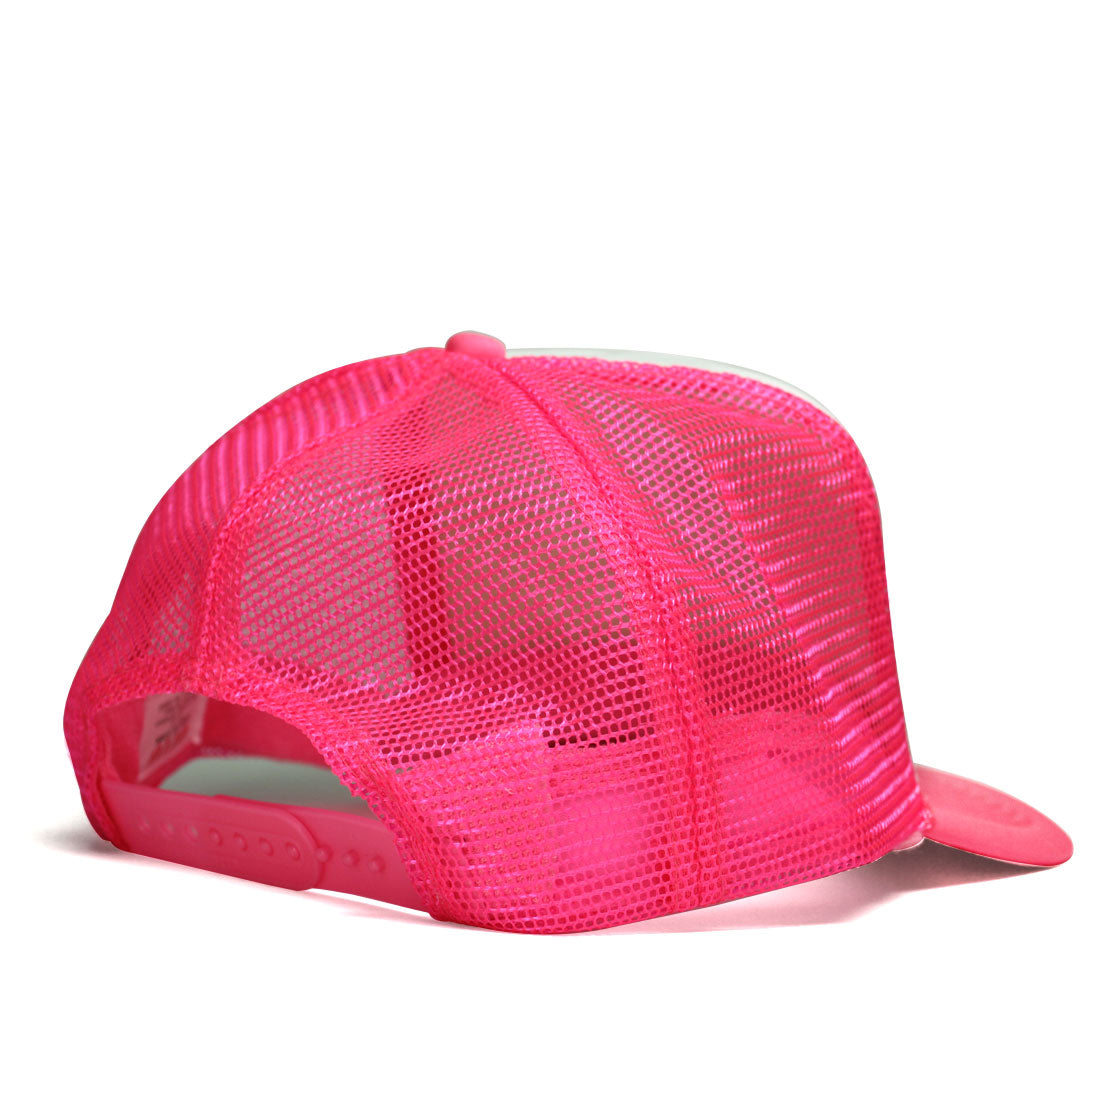 Rewind Curved Bill Trucker Hat in Hot Pink/White